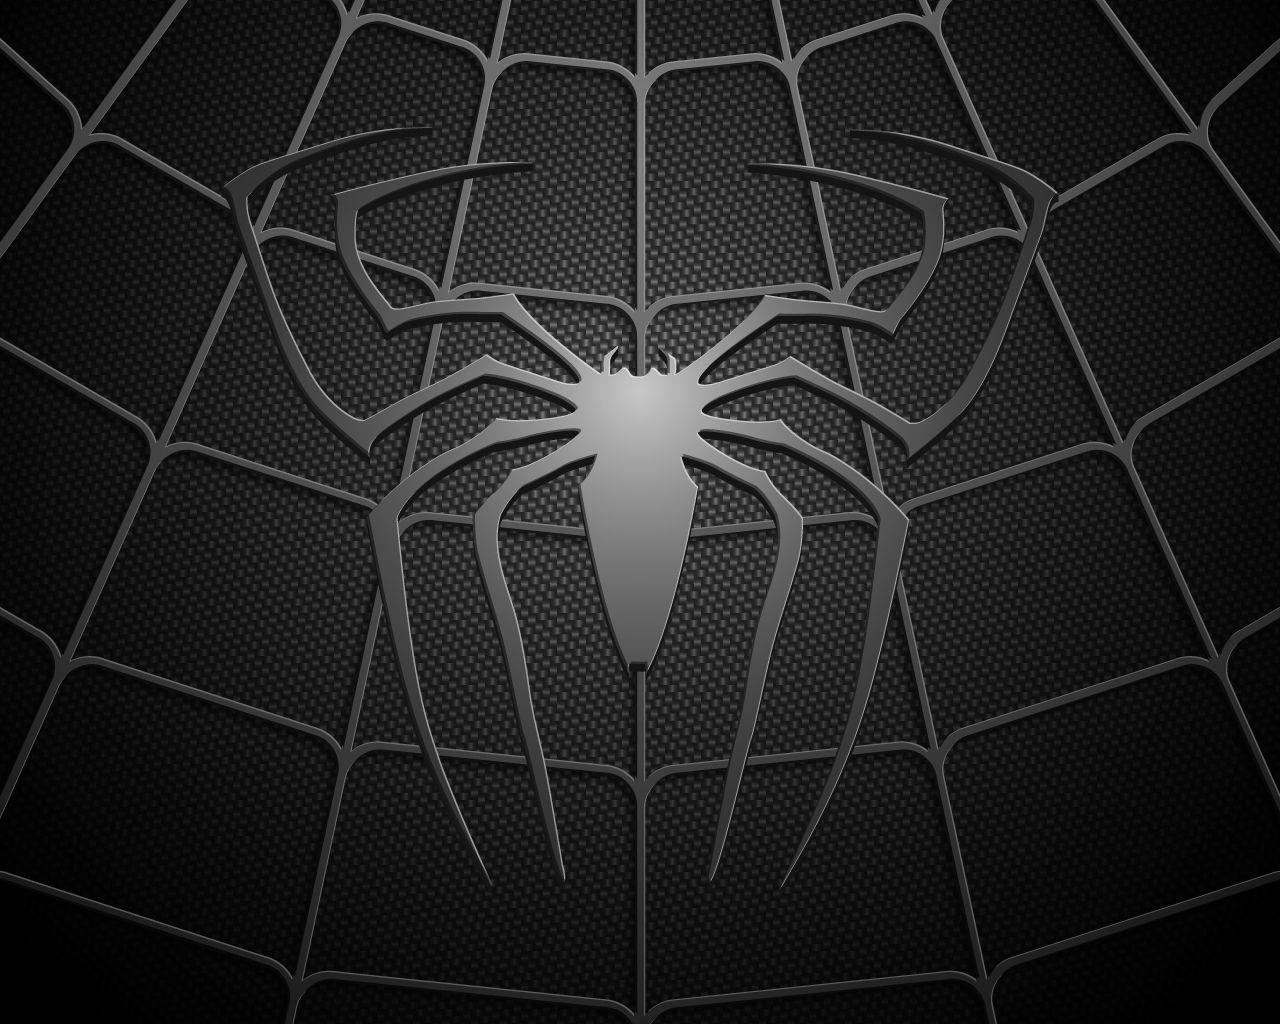 Spiderman Logo Wallpaper Image cQ. AVENGER!: SPIDERMAN